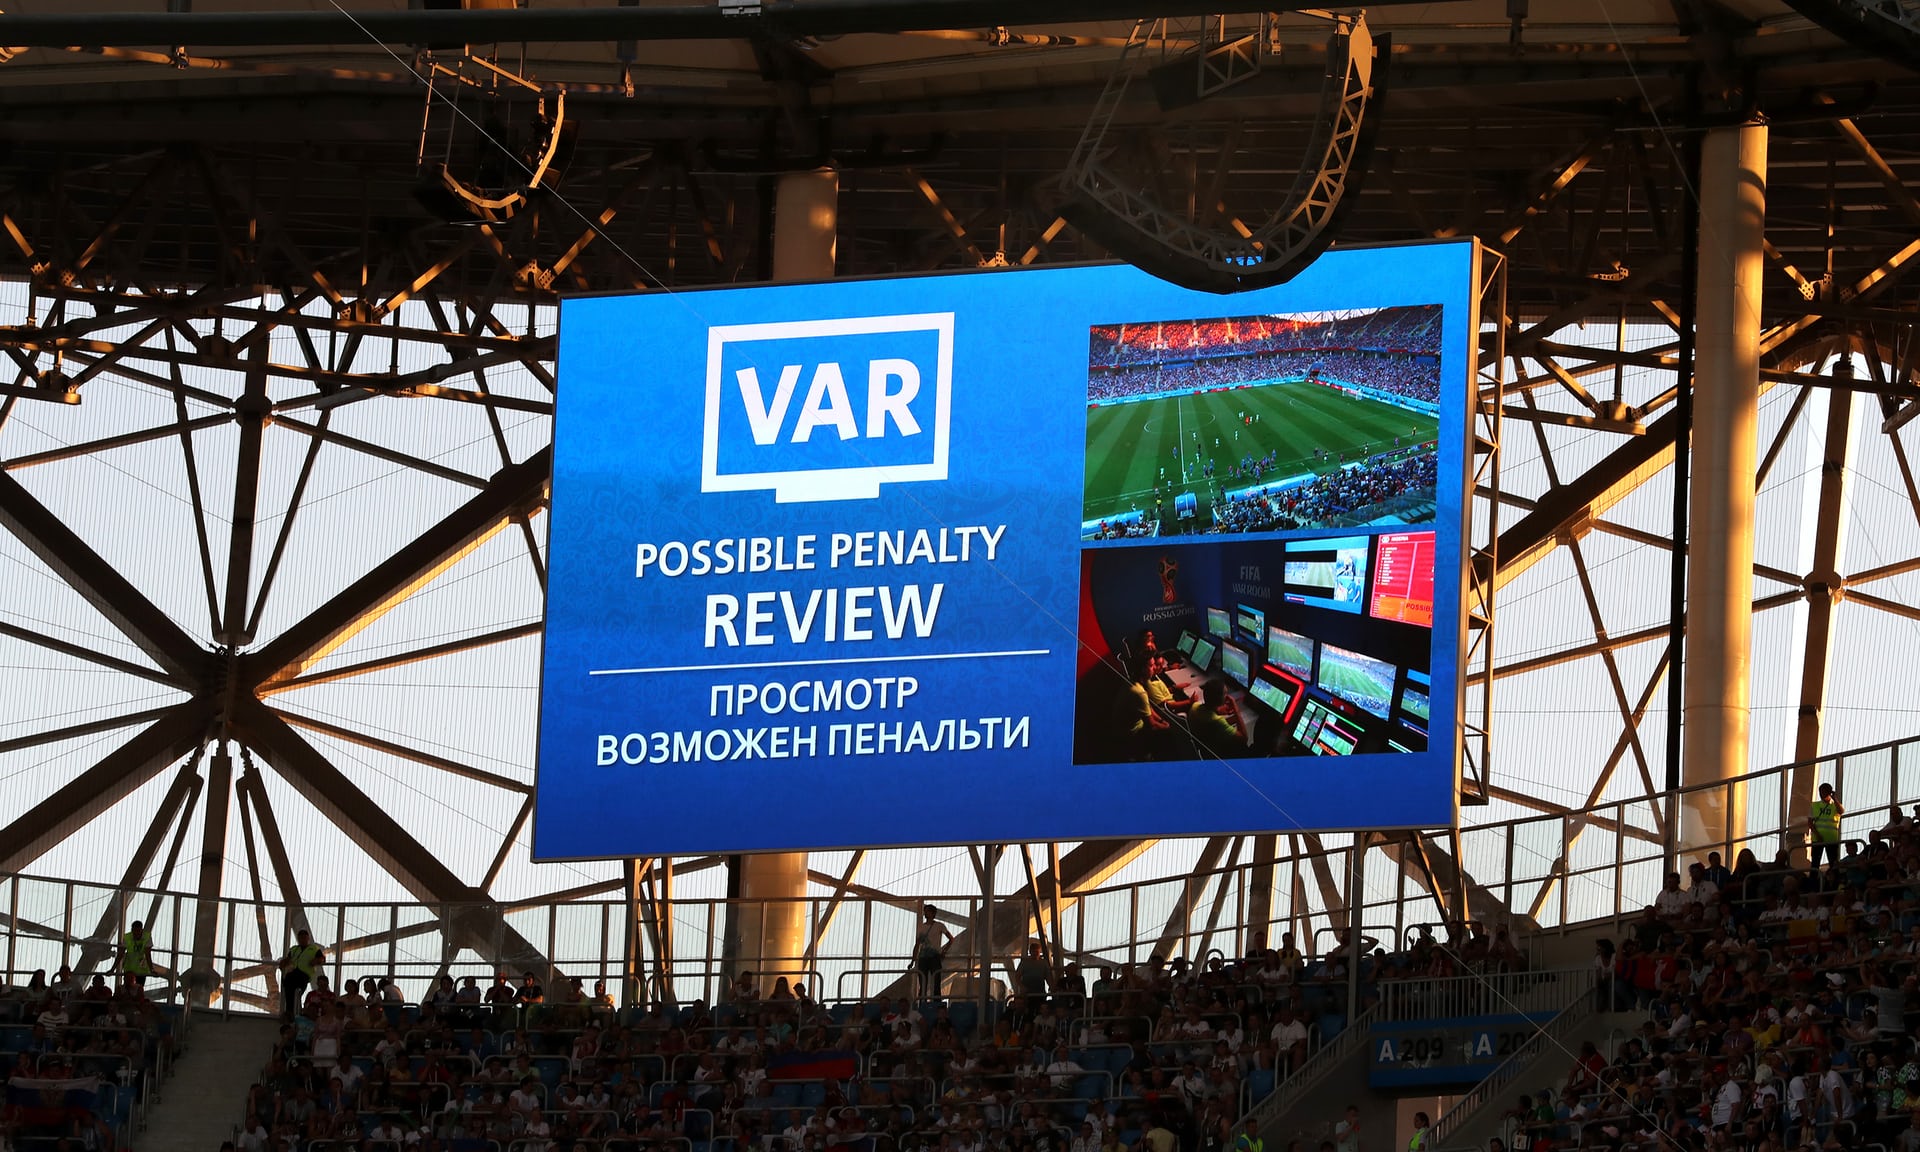 جام جهانی 2018 روسیه-فوتبال-تکنولوژی